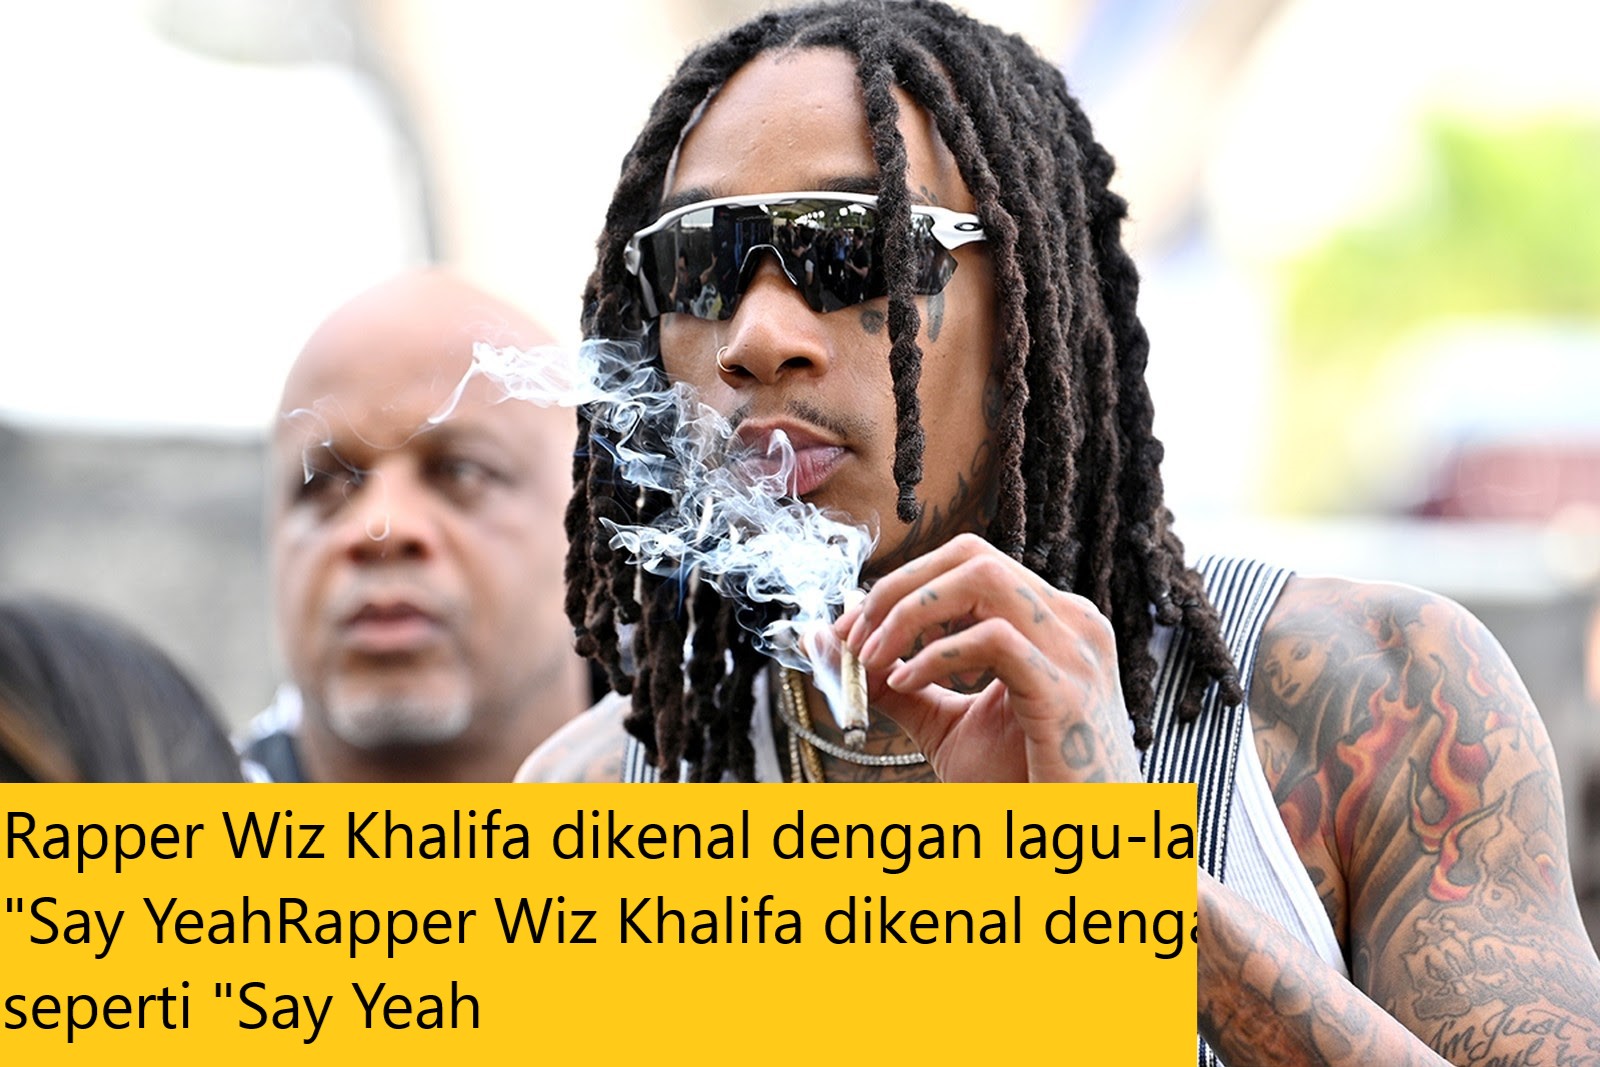 Rapper Wiz Khalifa dikenal dengan lagu-lagu seperti “Say Yeah